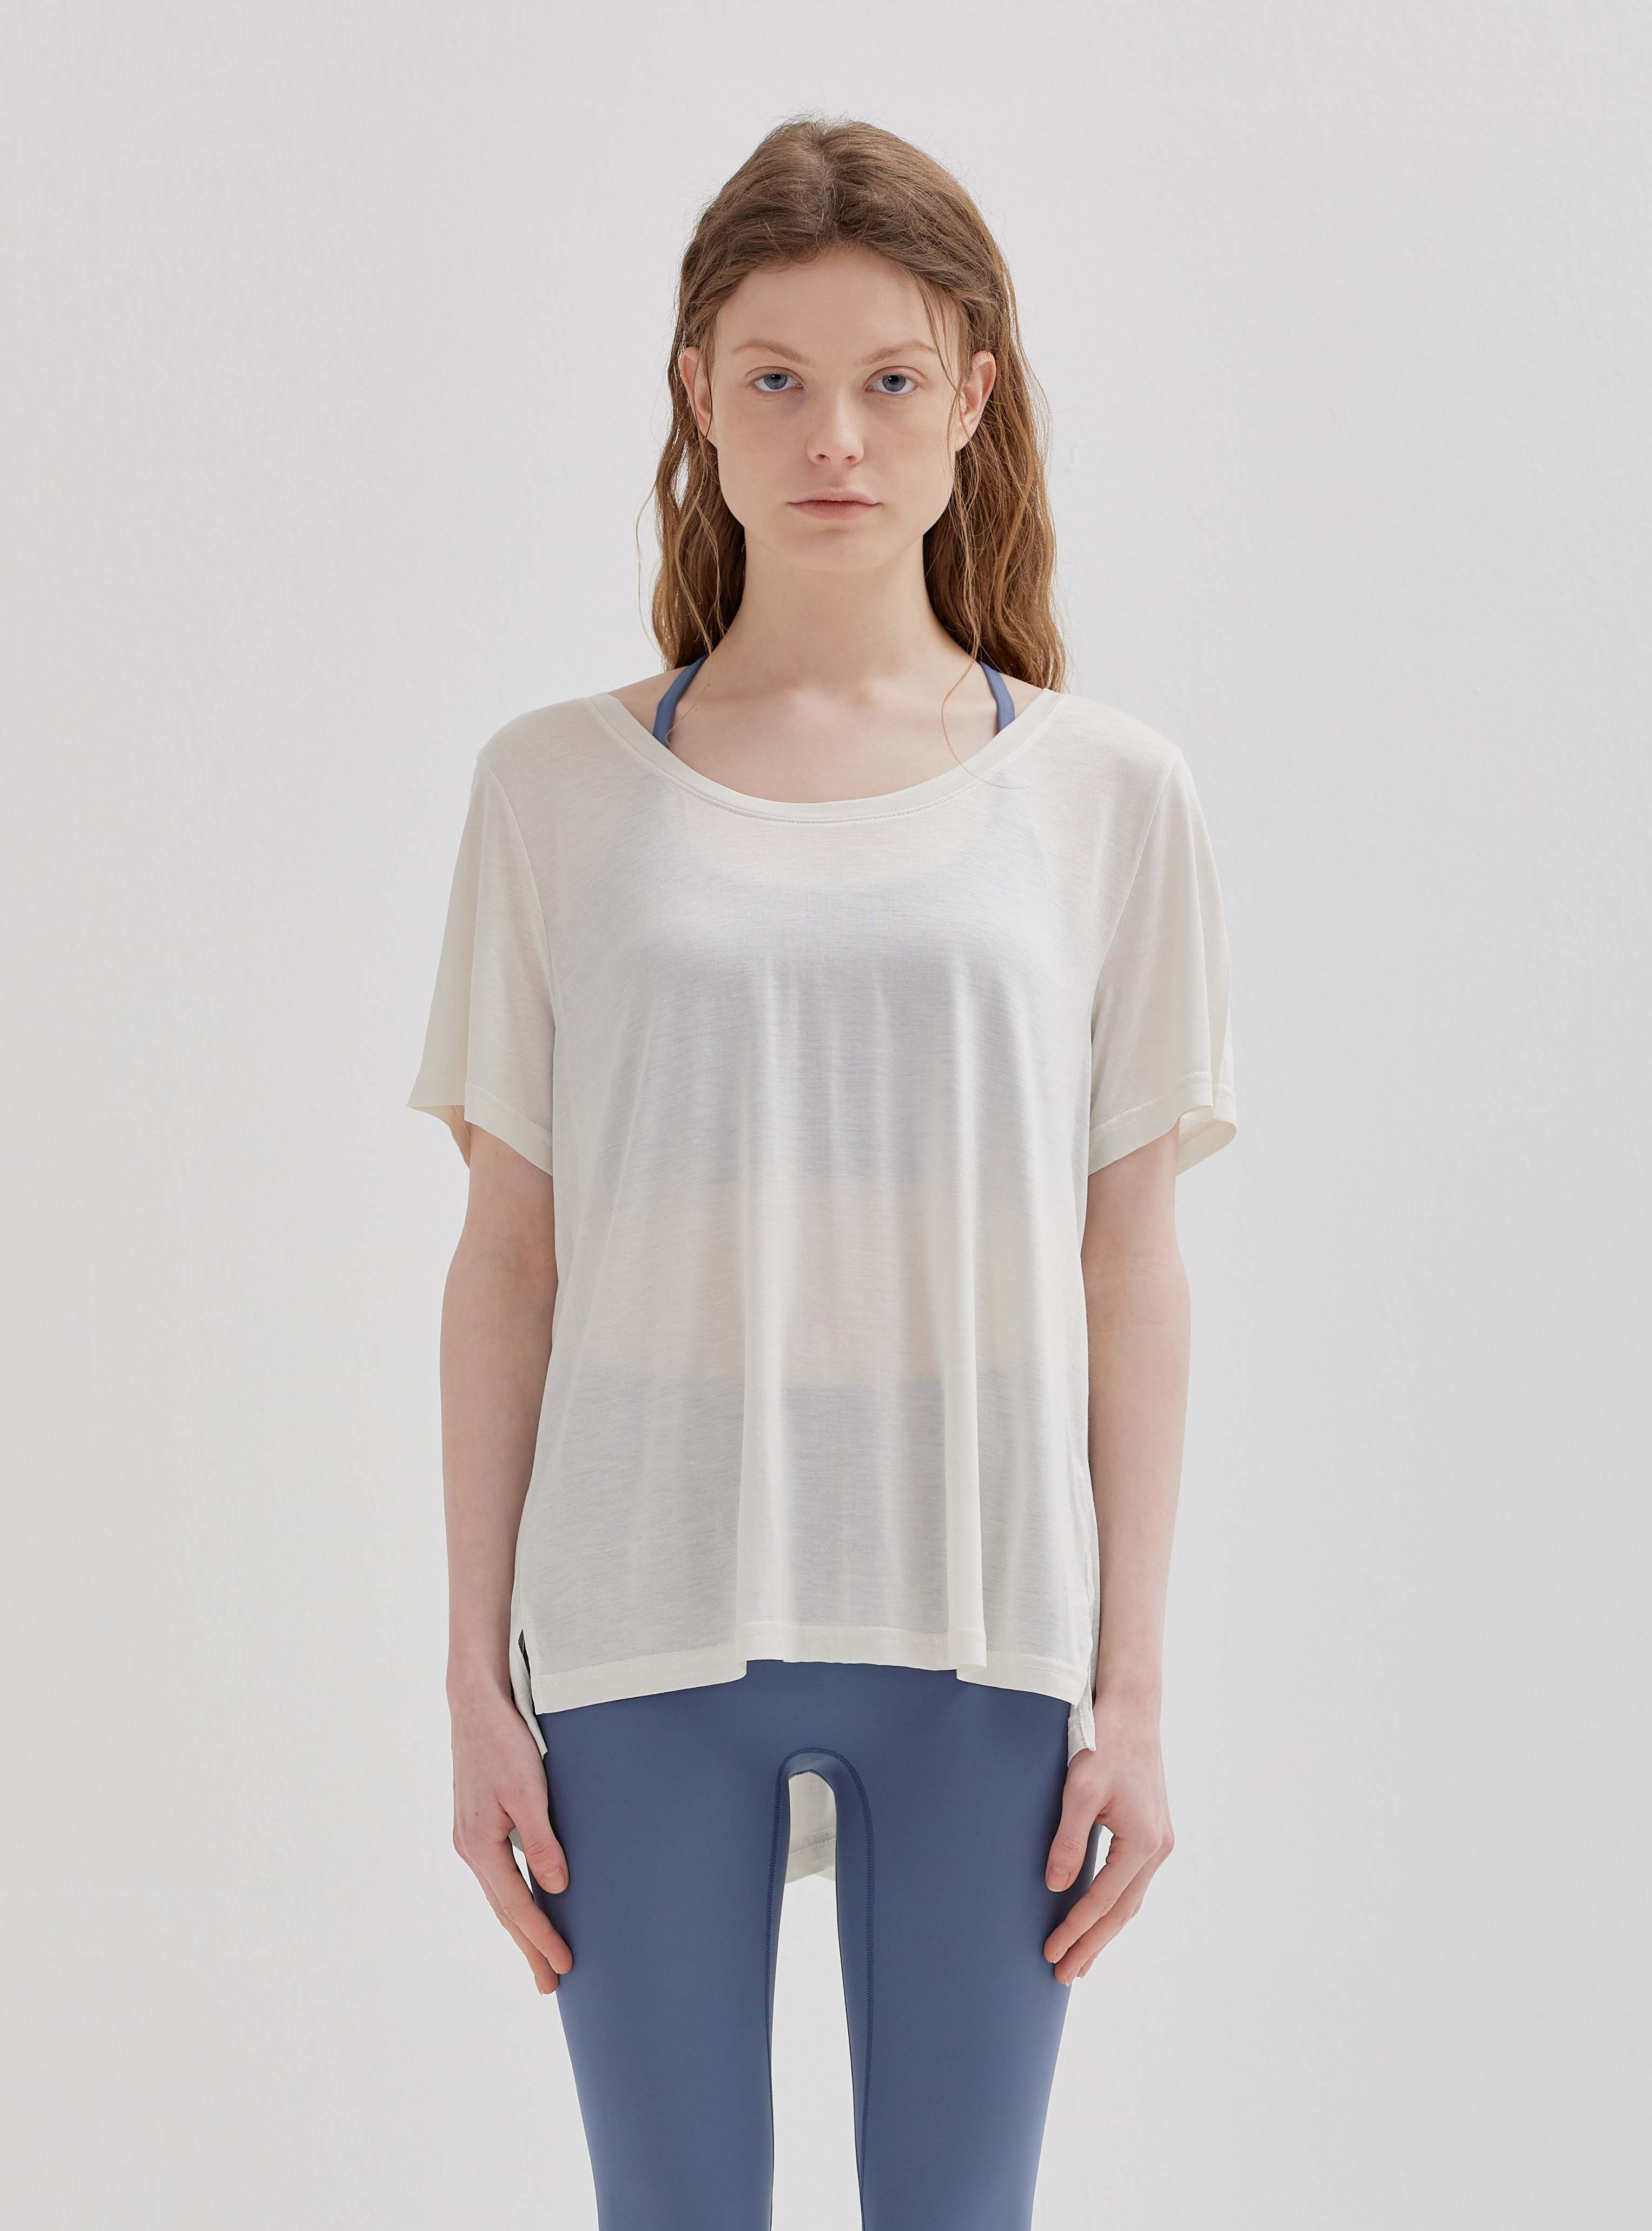 리브레 티셔츠 화이트  Libré t-shirt : white